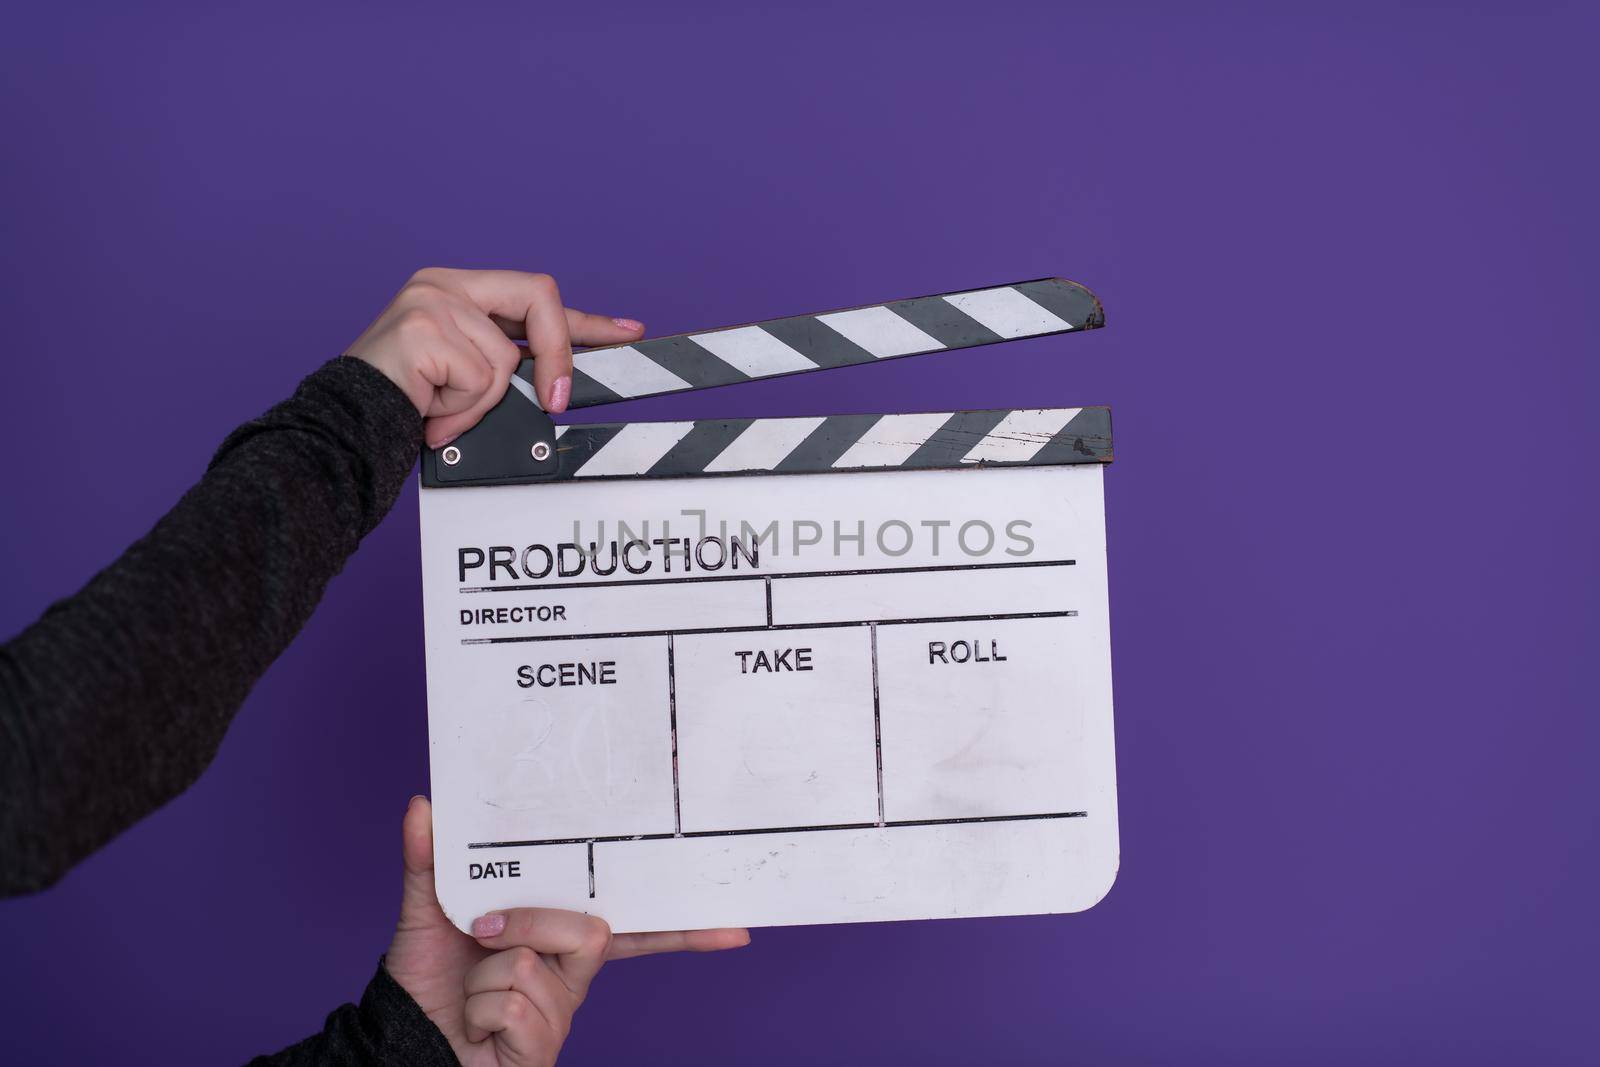 movie clapper on purple background by dotshock